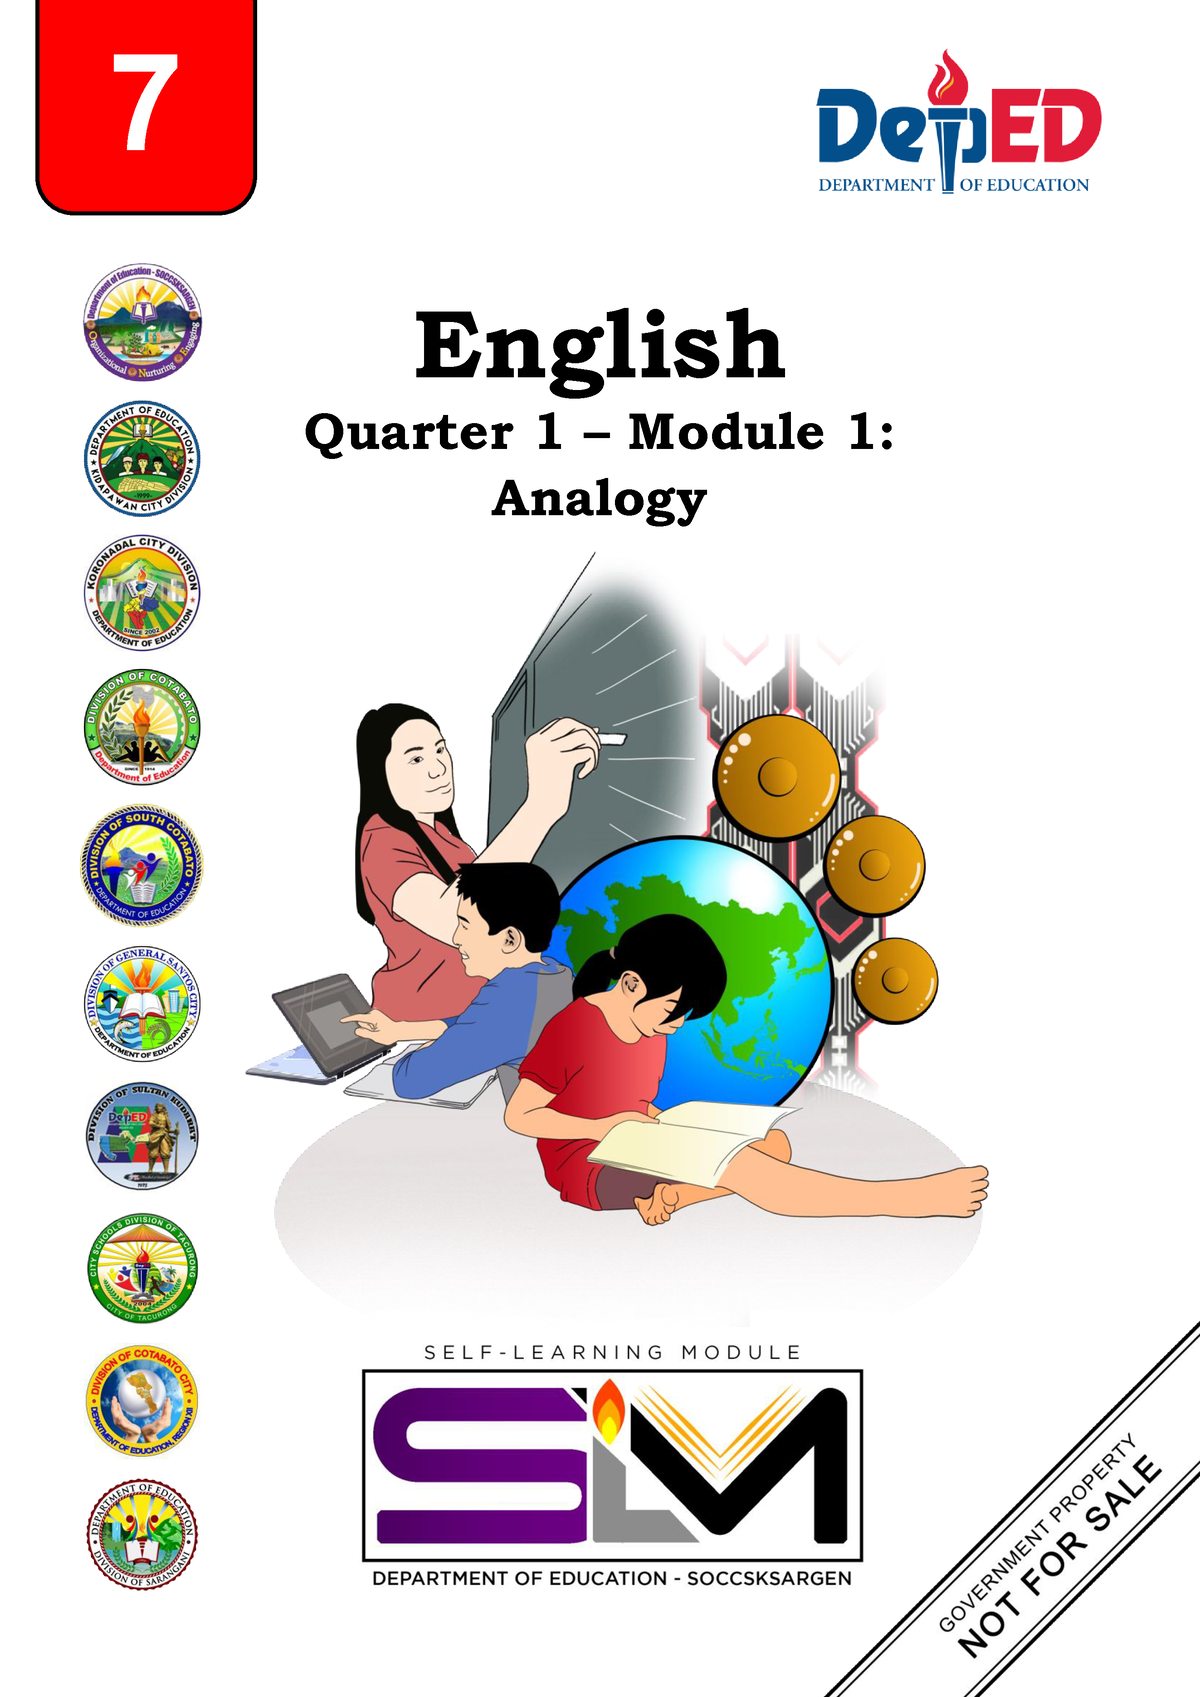 G7 English Quarter 1 Module 1 English Quarter 1 Module 1 Analogy 7 Subject Area Grade 0279